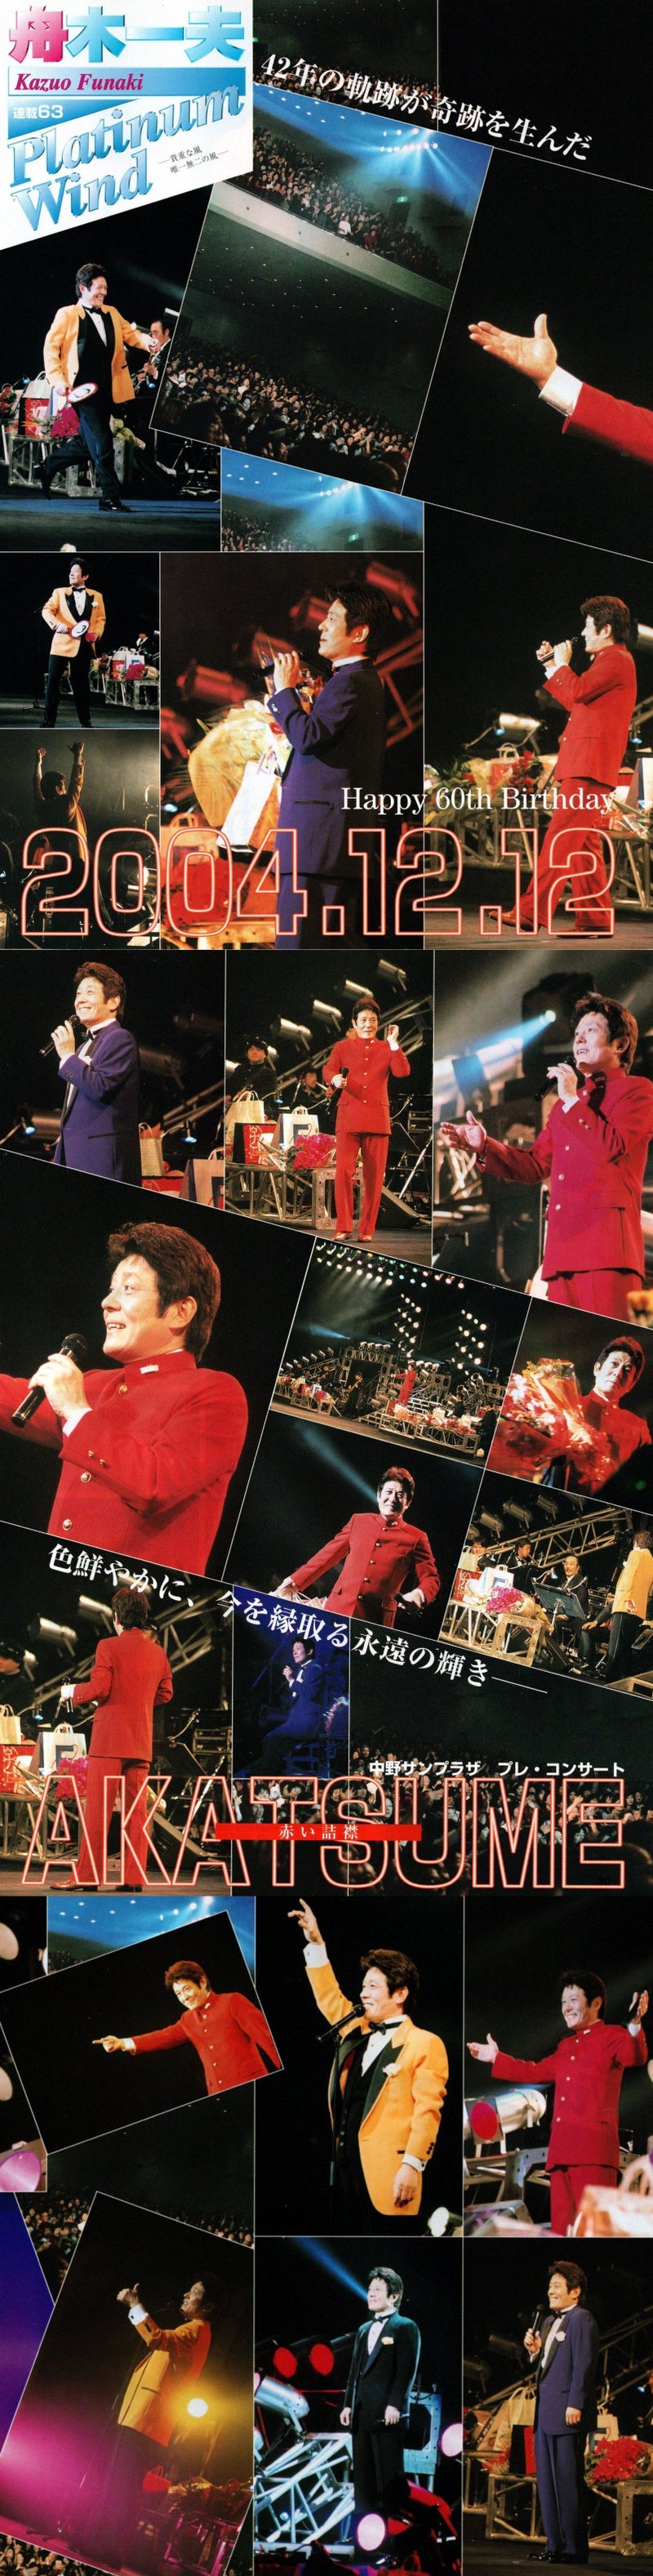 舟木一夫 アカツメコンサート プレイベント（2004年12月12日）中野サンプラザ | 武蔵野舟木組 2022